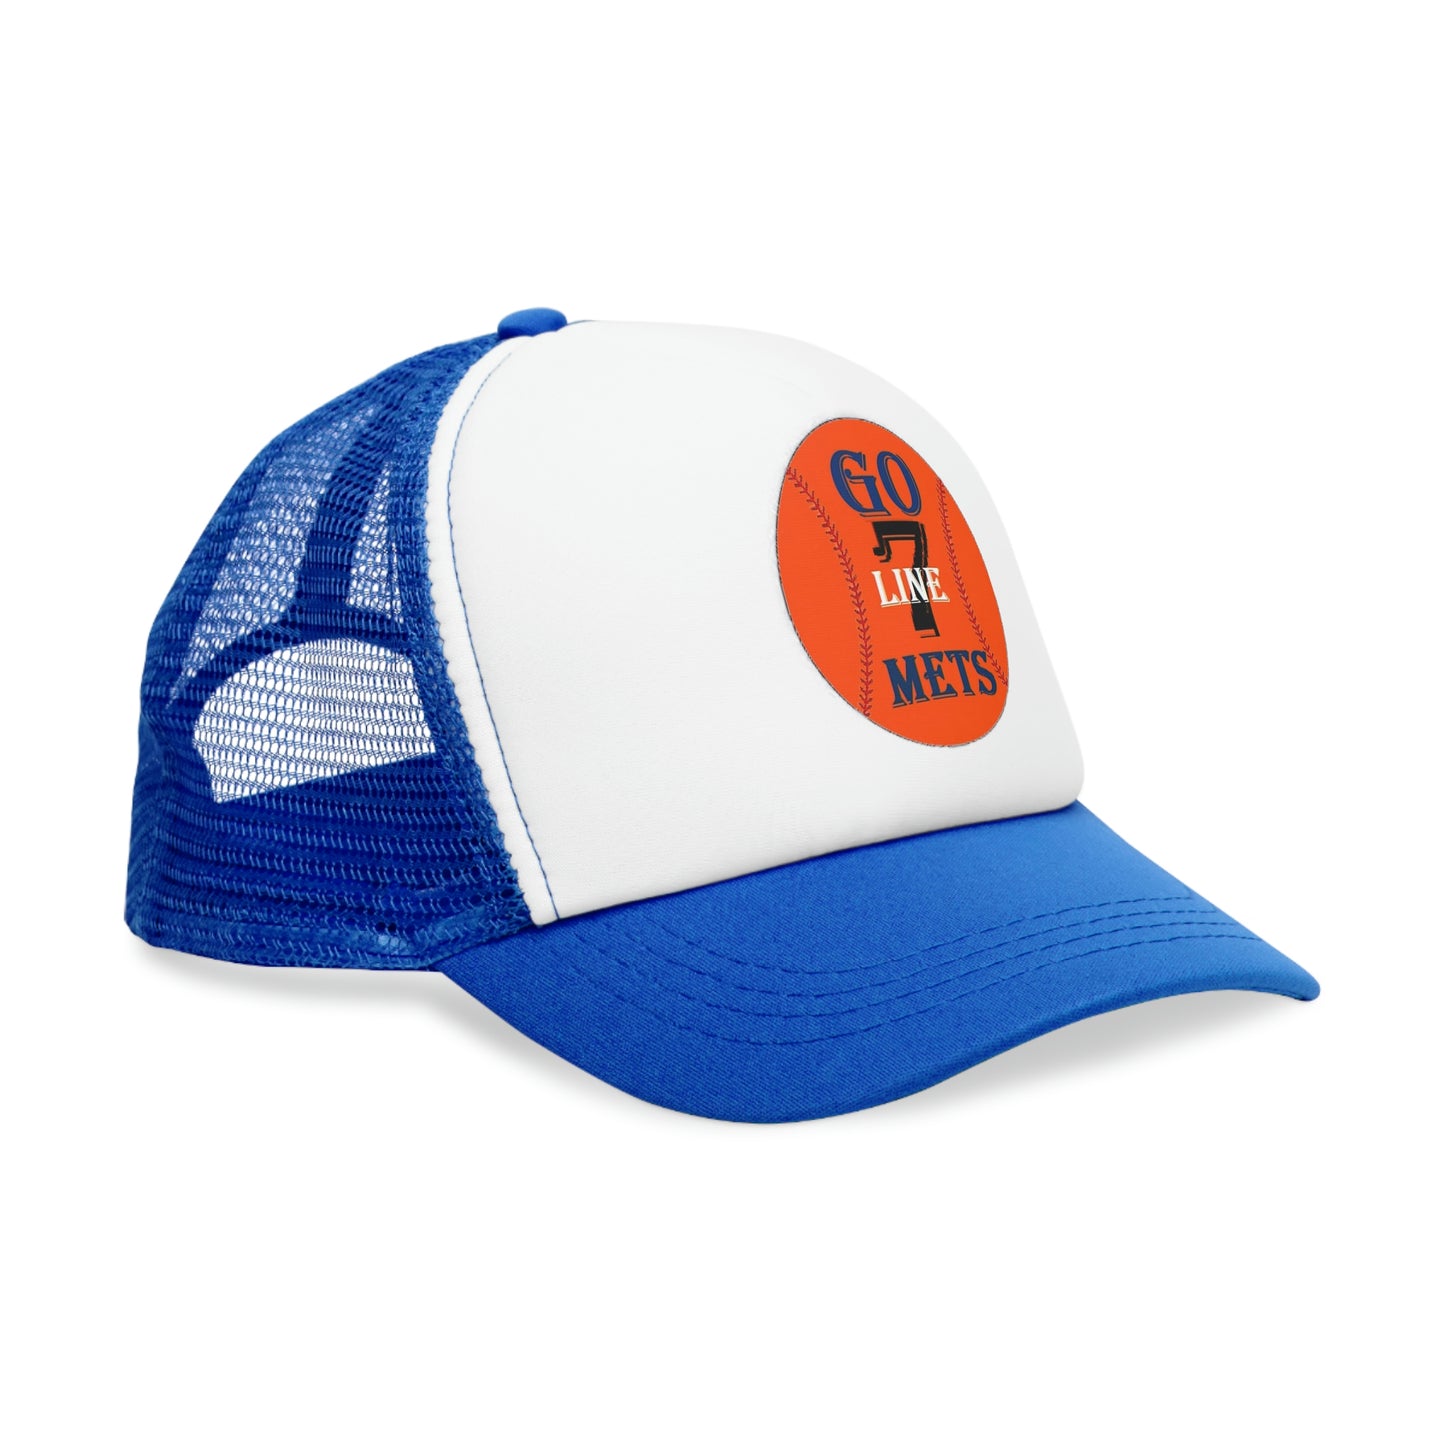 Go Mets - 7 Line Mesh Cap